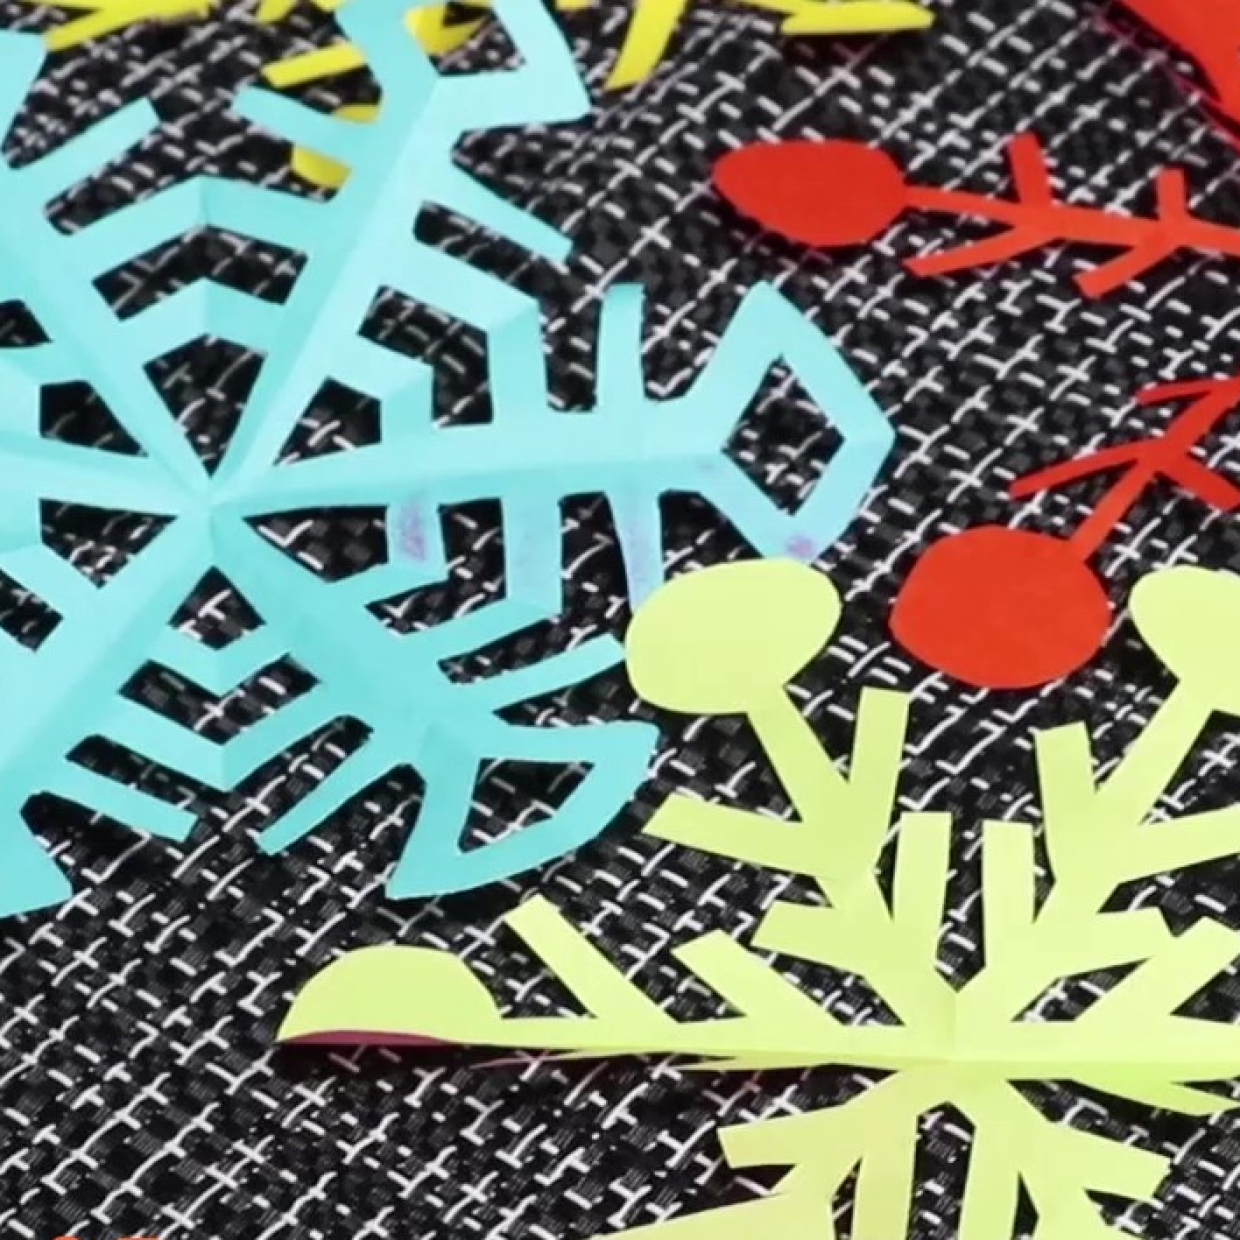  【飾り付けアイデア】冬のイベントに作って飾ろう！「雪の結晶な切り絵」が折り紙で簡単に作れる件 